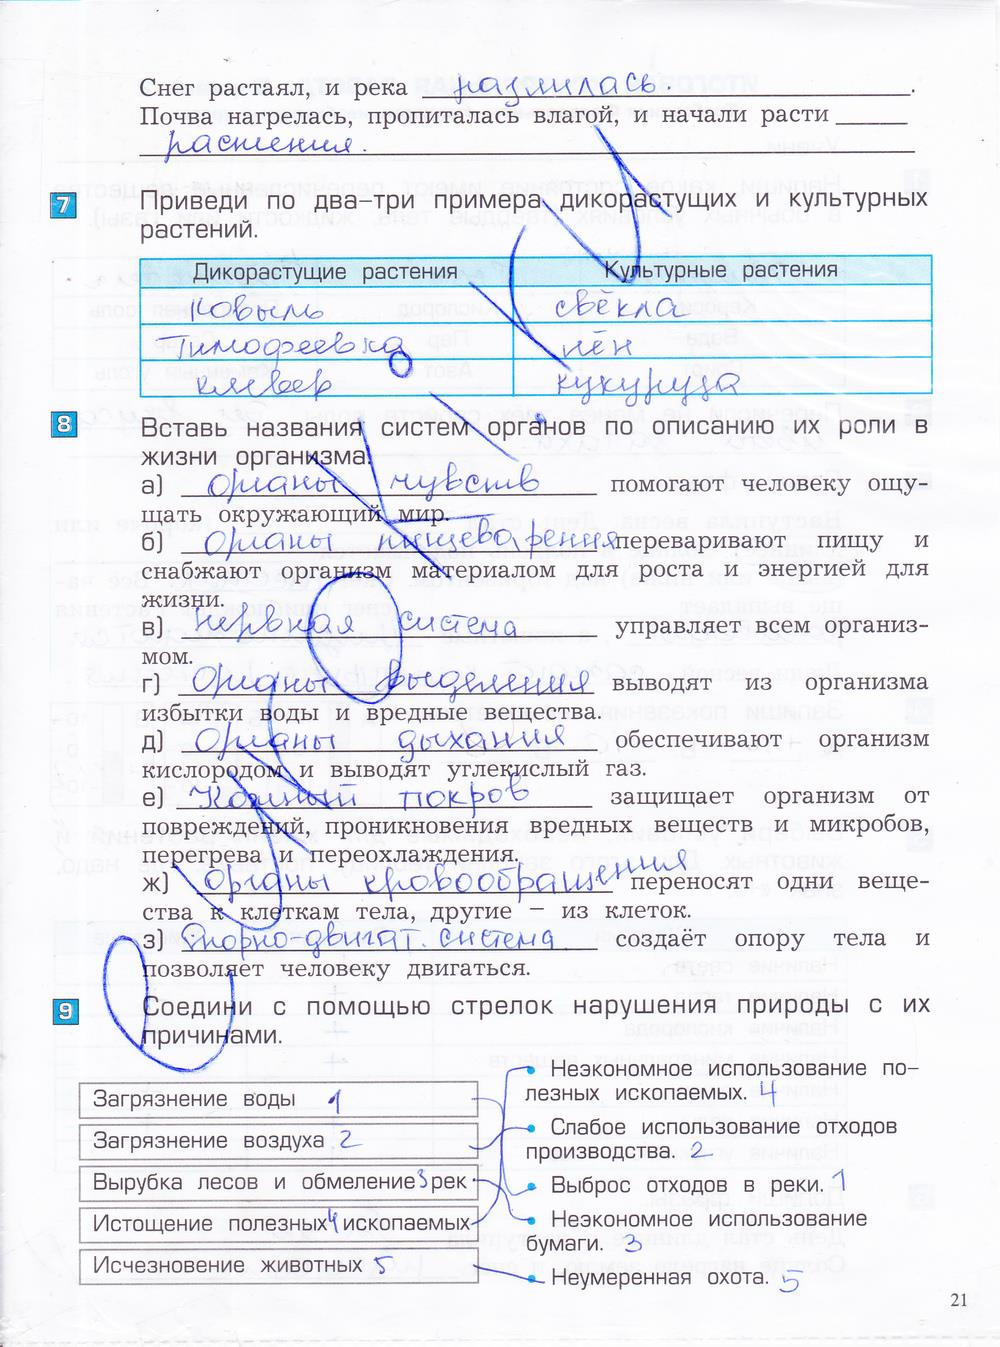 гдз 4 класс проверочные и контрольные работы часть 1 страница 21 окружающий мир Вахрушев, Бурский, Родыгина